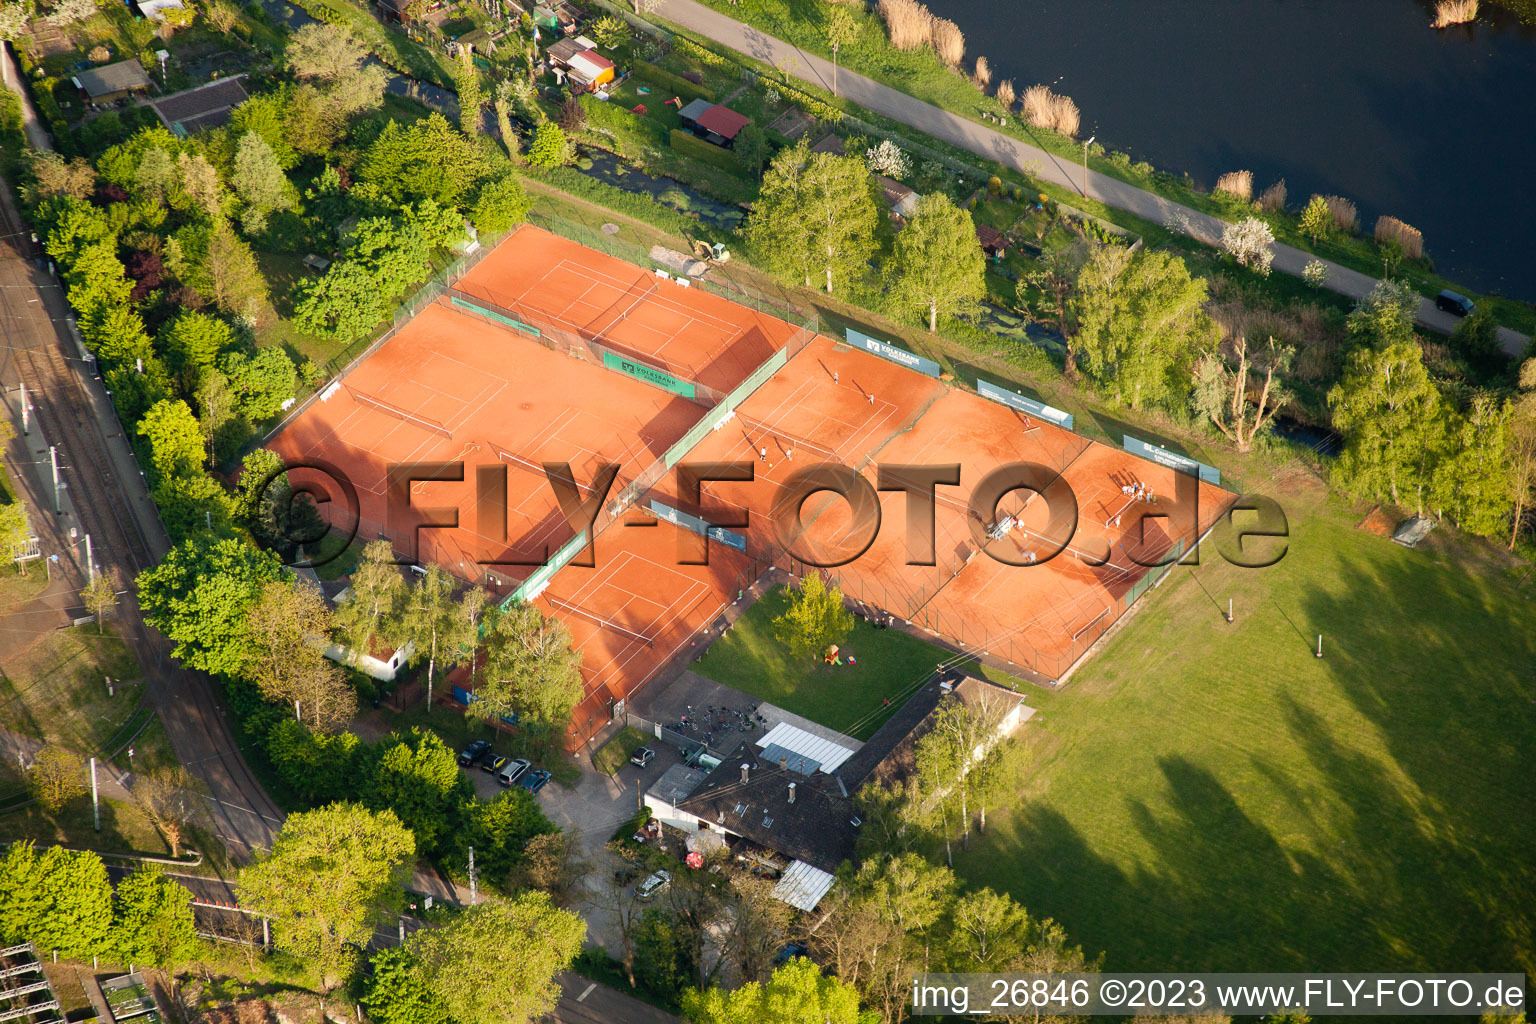 Vue aérienne de Club de tennis des installations sportives à le quartier Daxlanden in Karlsruhe dans le département Bade-Wurtemberg, Allemagne